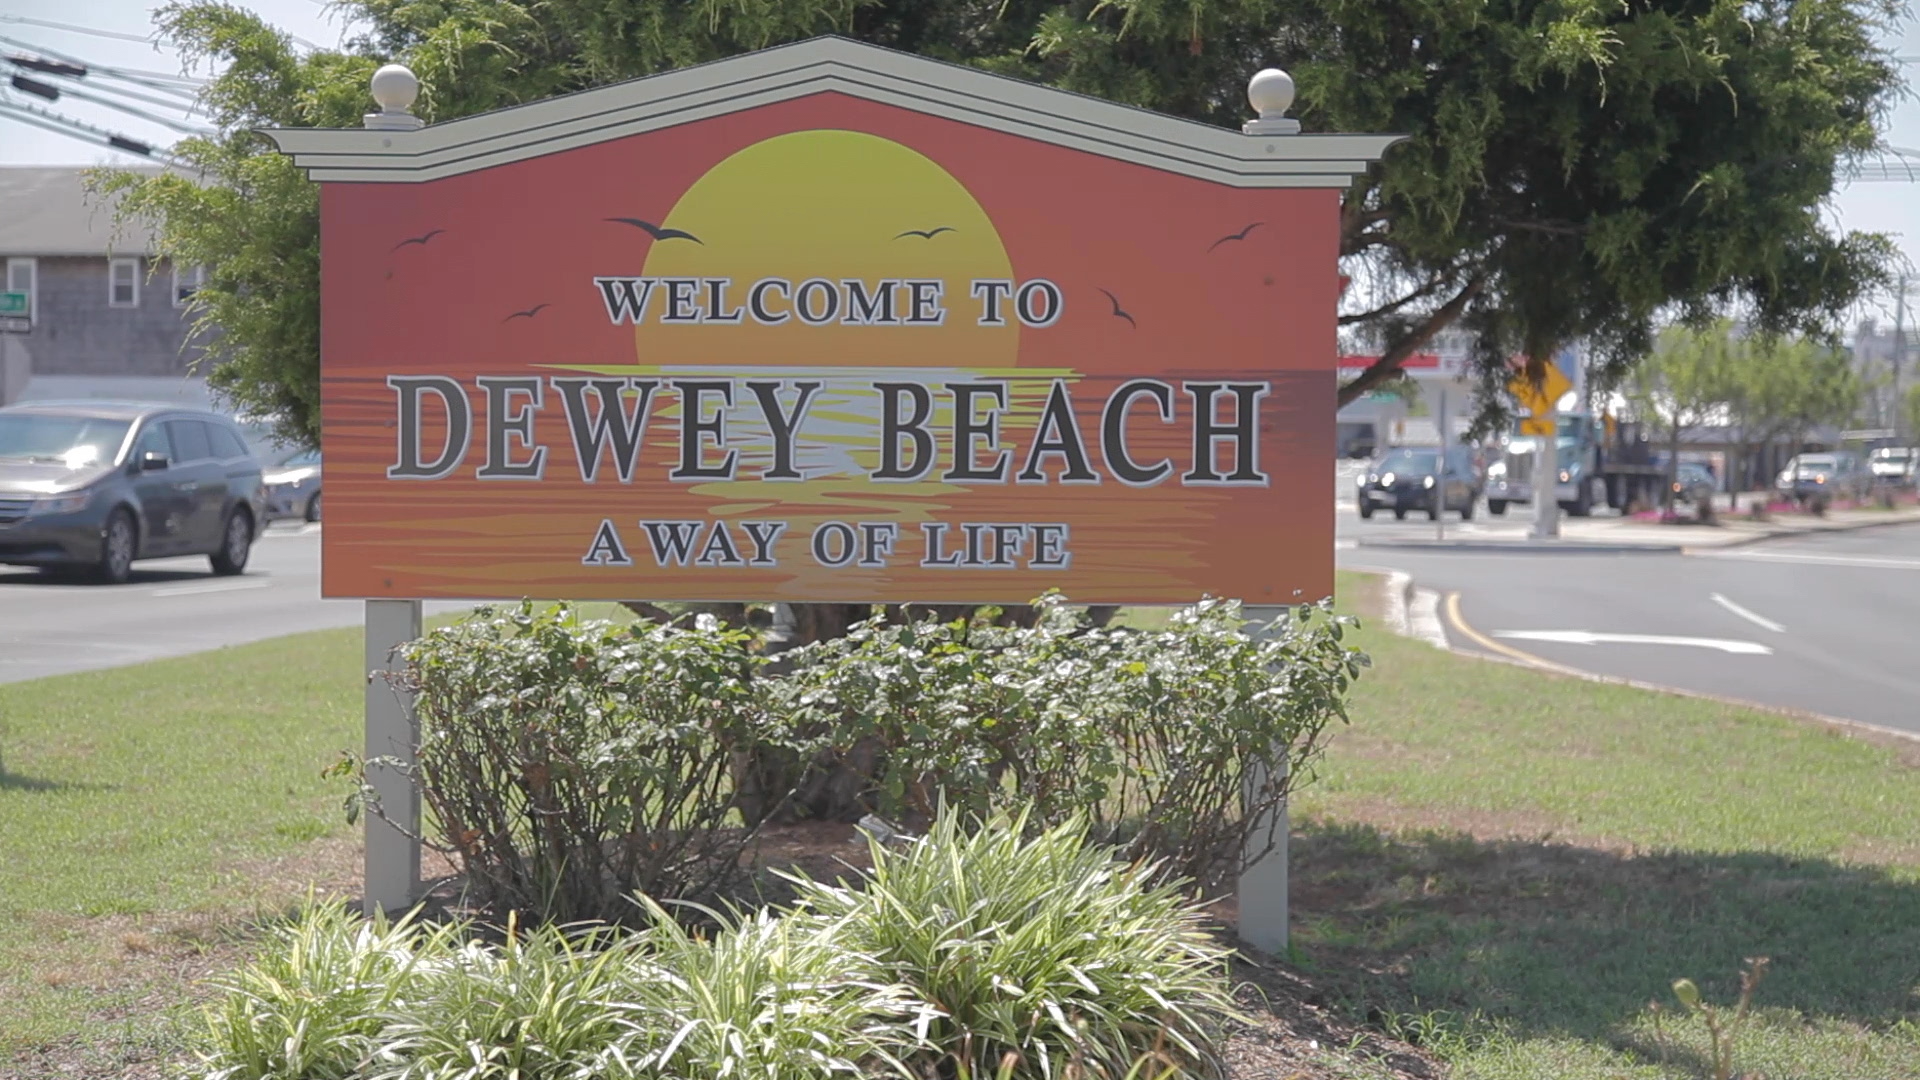 Dewy Beach